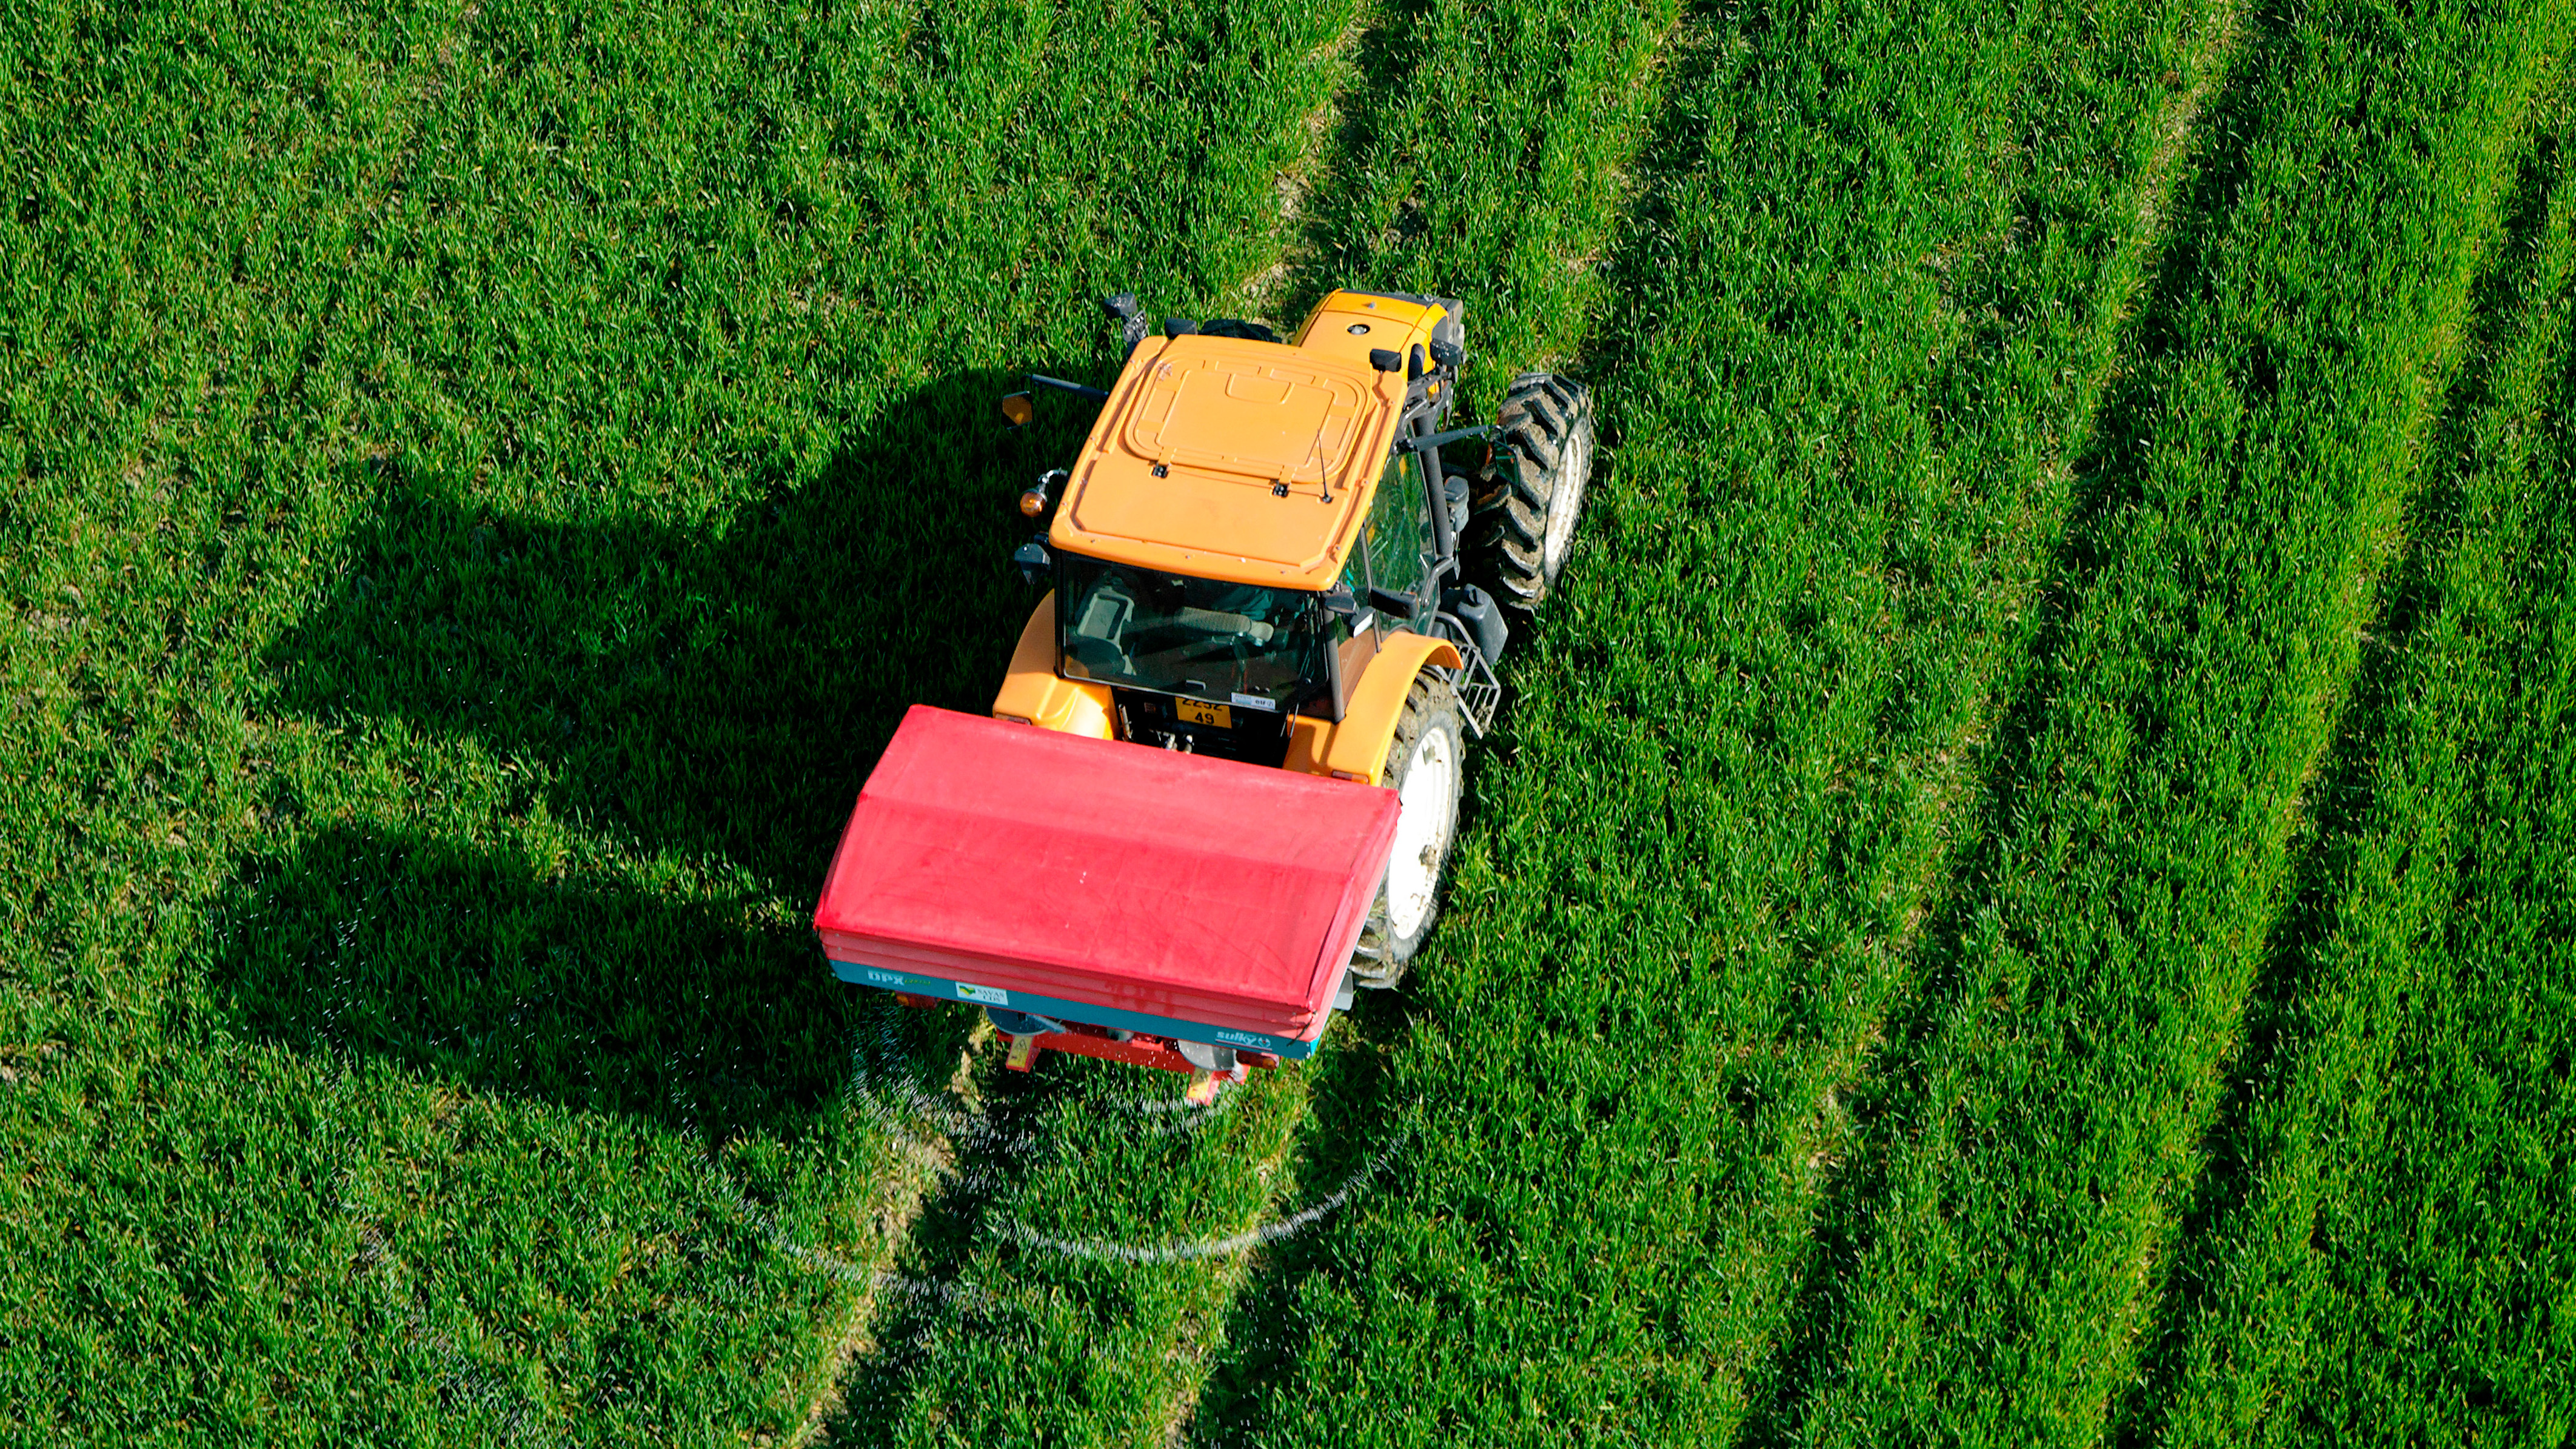 Bird's eye view of tractor with fertilizer spreader (16:9)